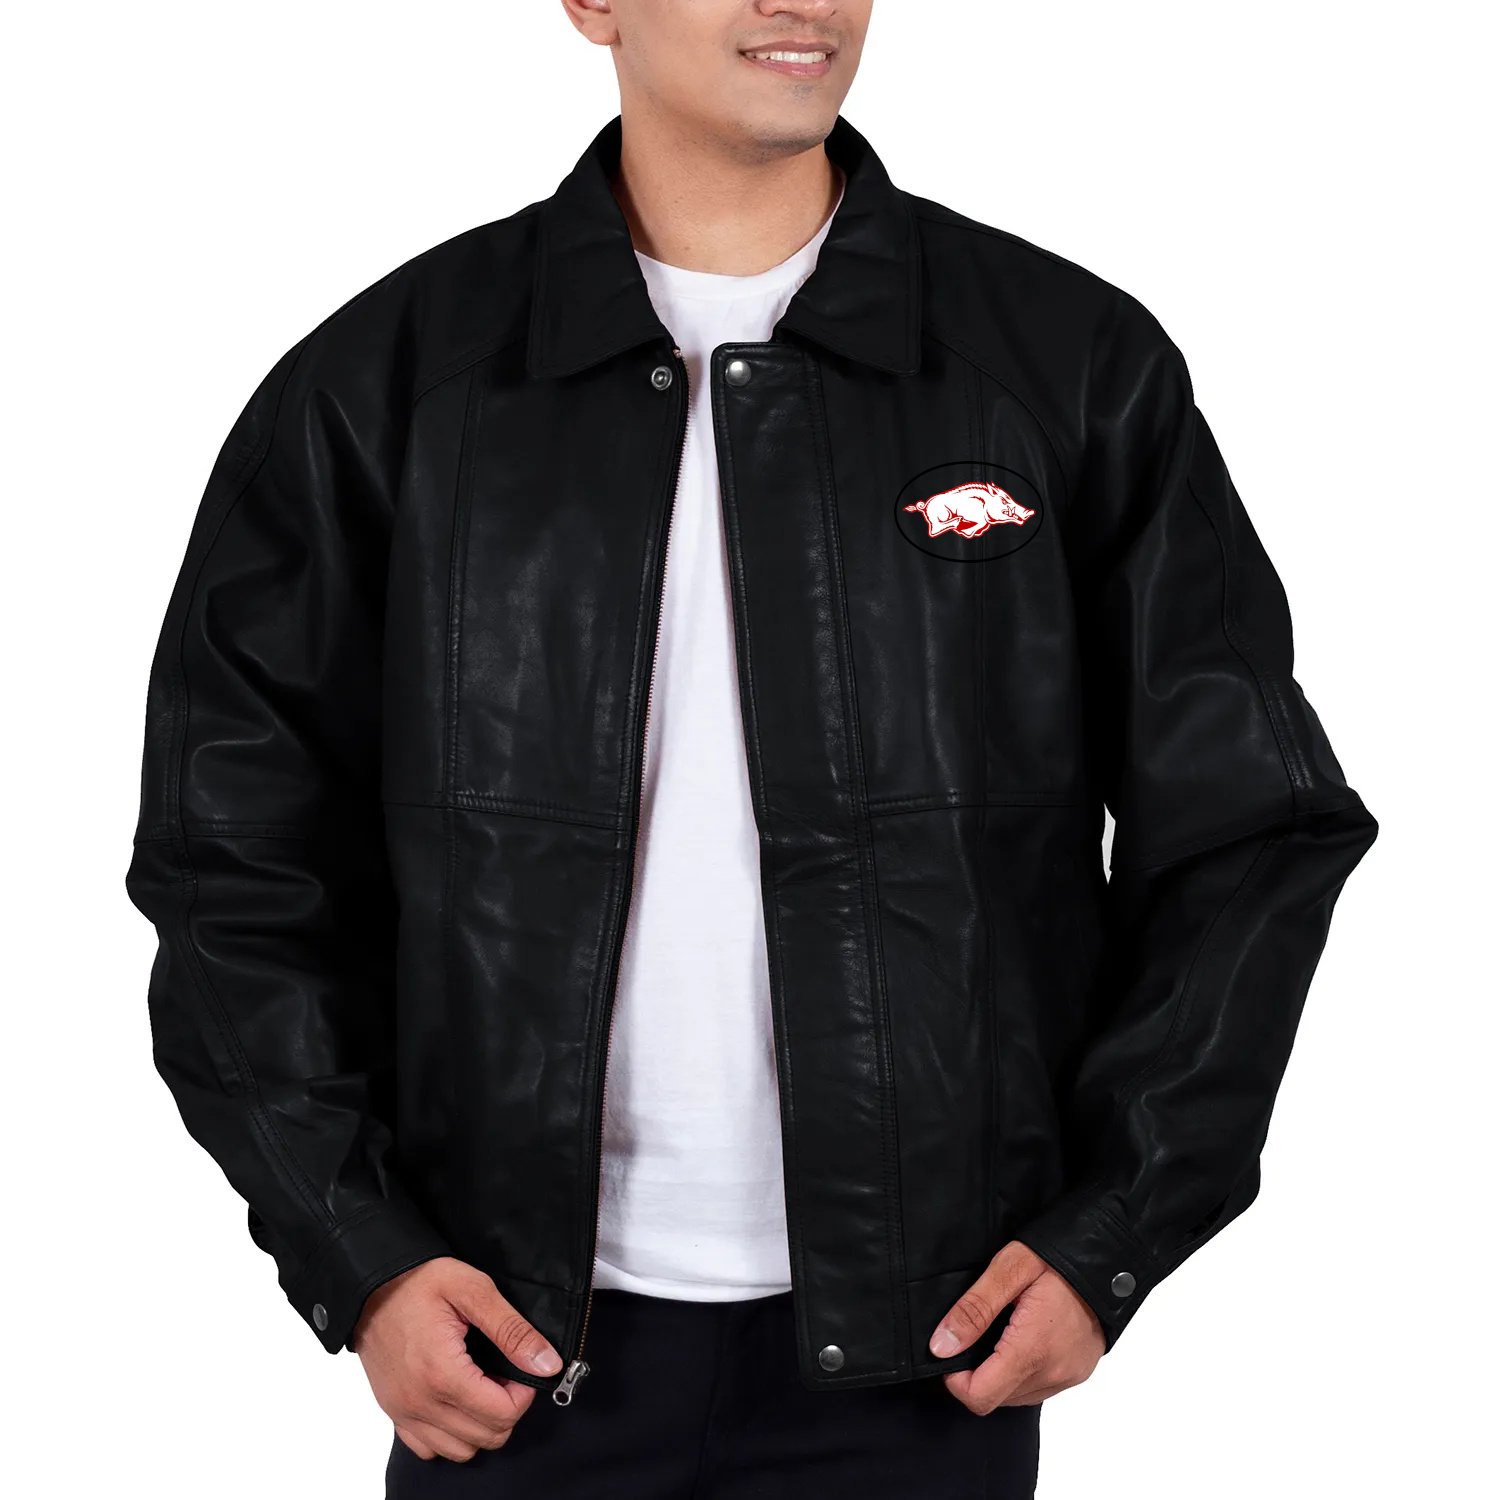 Franchise Club MFG. CO Razorback Classic ACE Leather Bomber Jacket